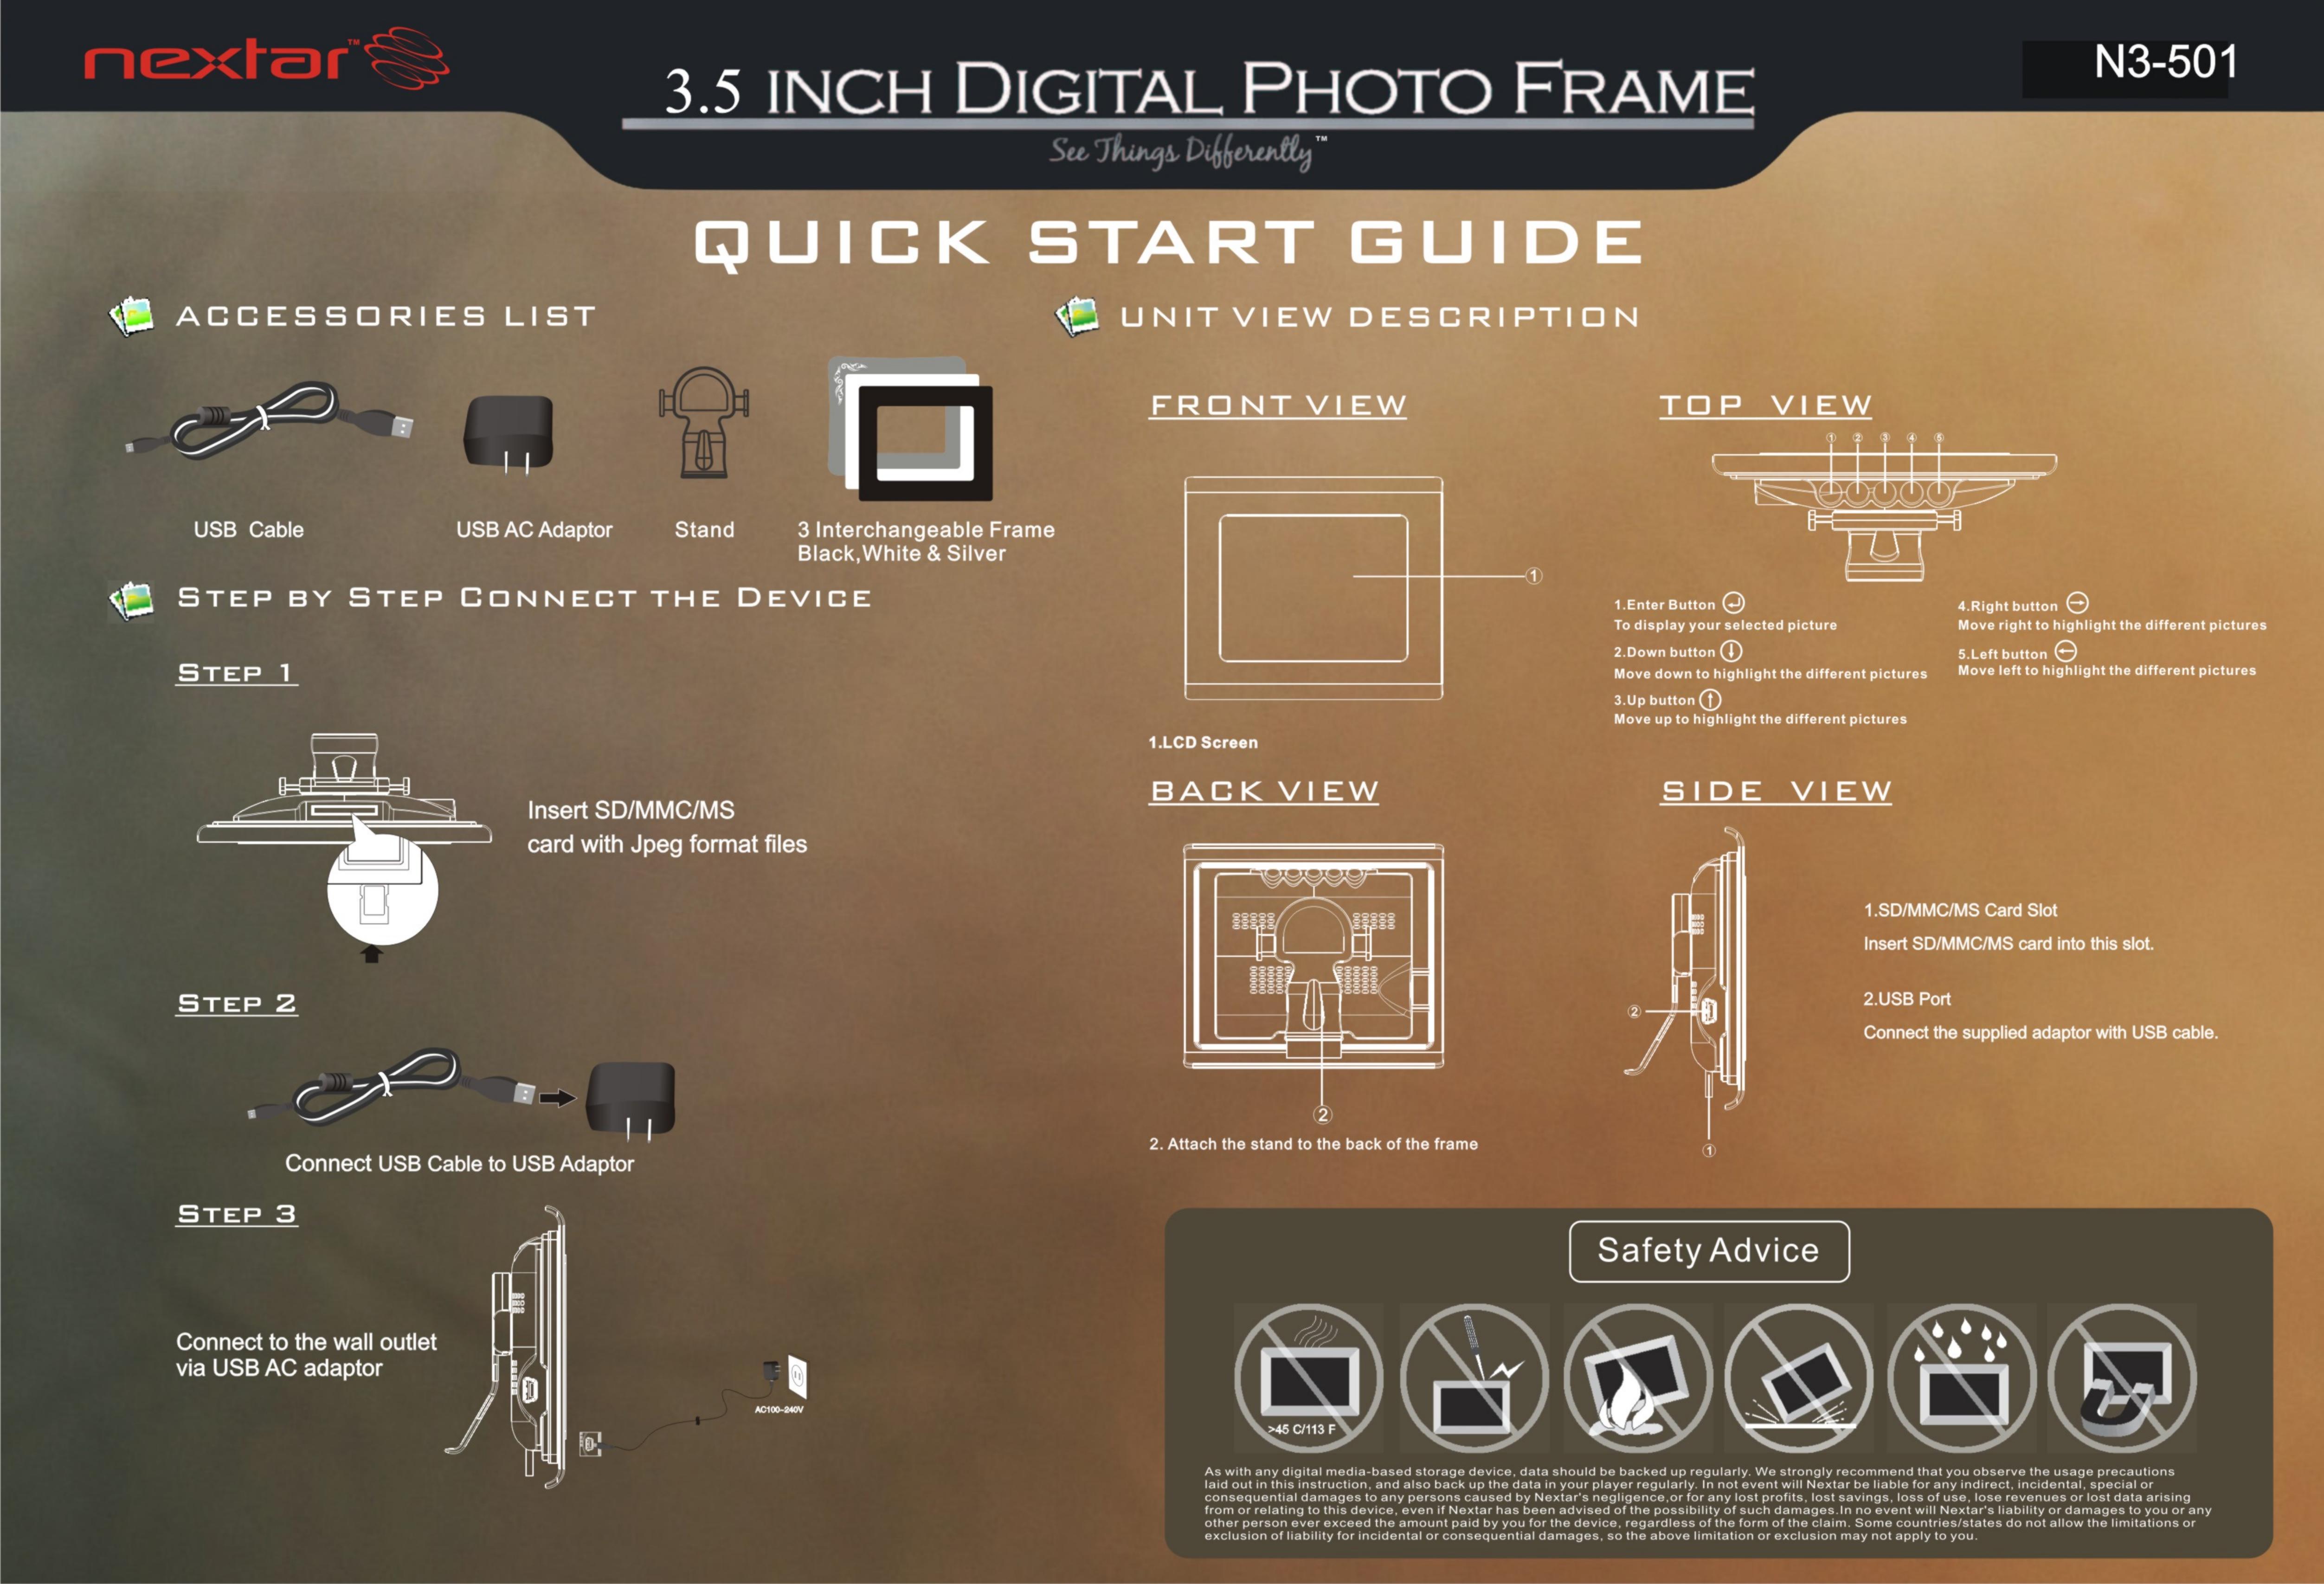 Nextar N3-501 Digital Photo Frame User Manual